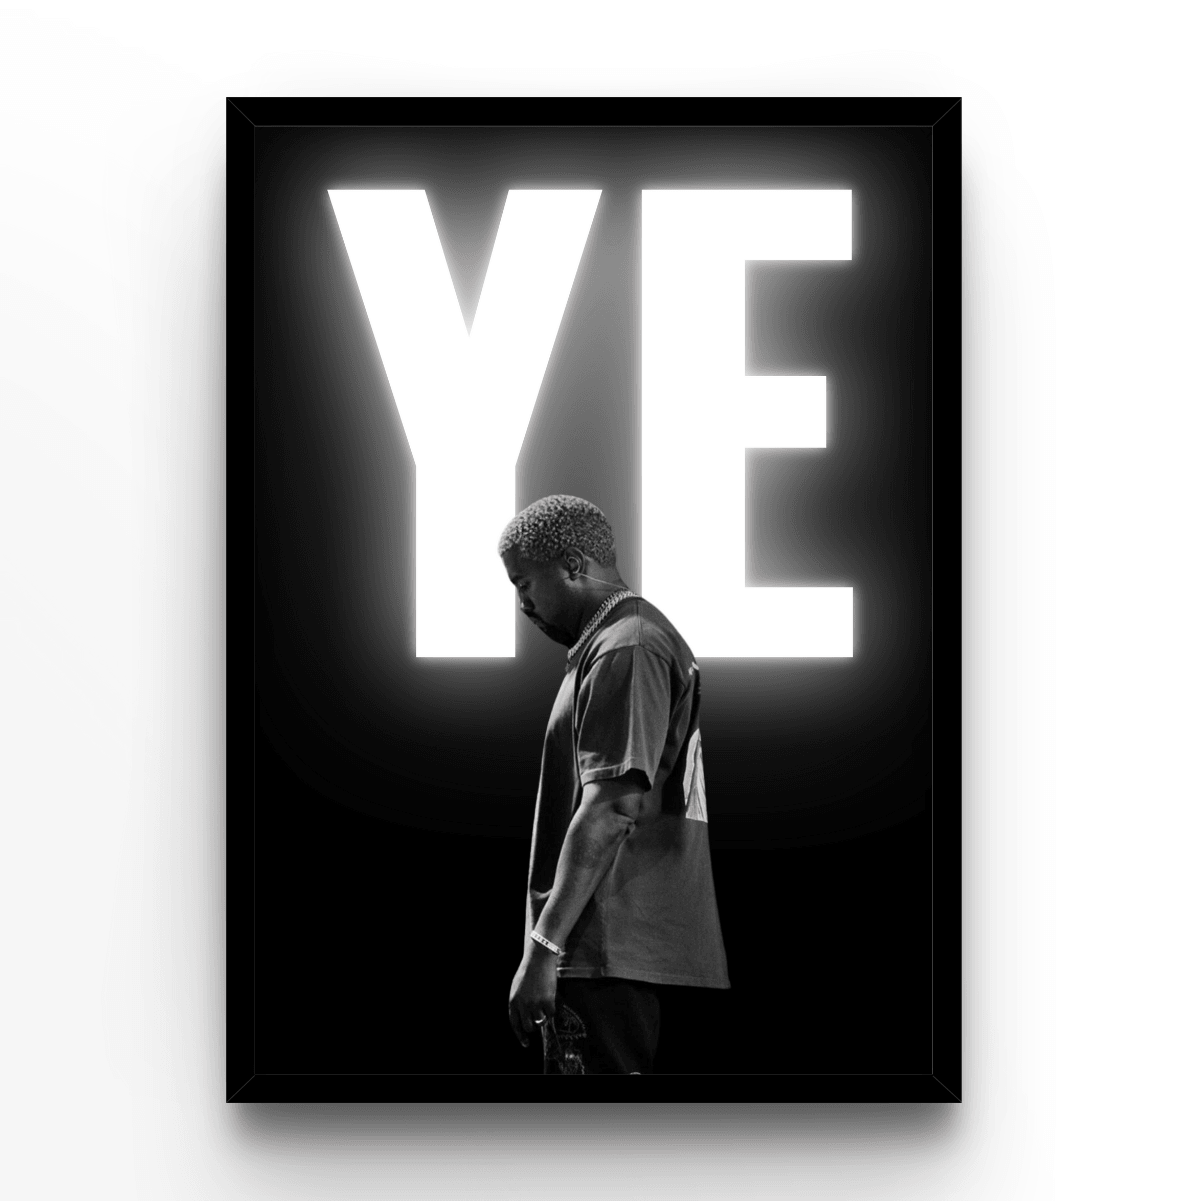 Kanye West YE - A4, A3, A2 Posters Base - Poster Print Shop / Art Prints / PostersBase